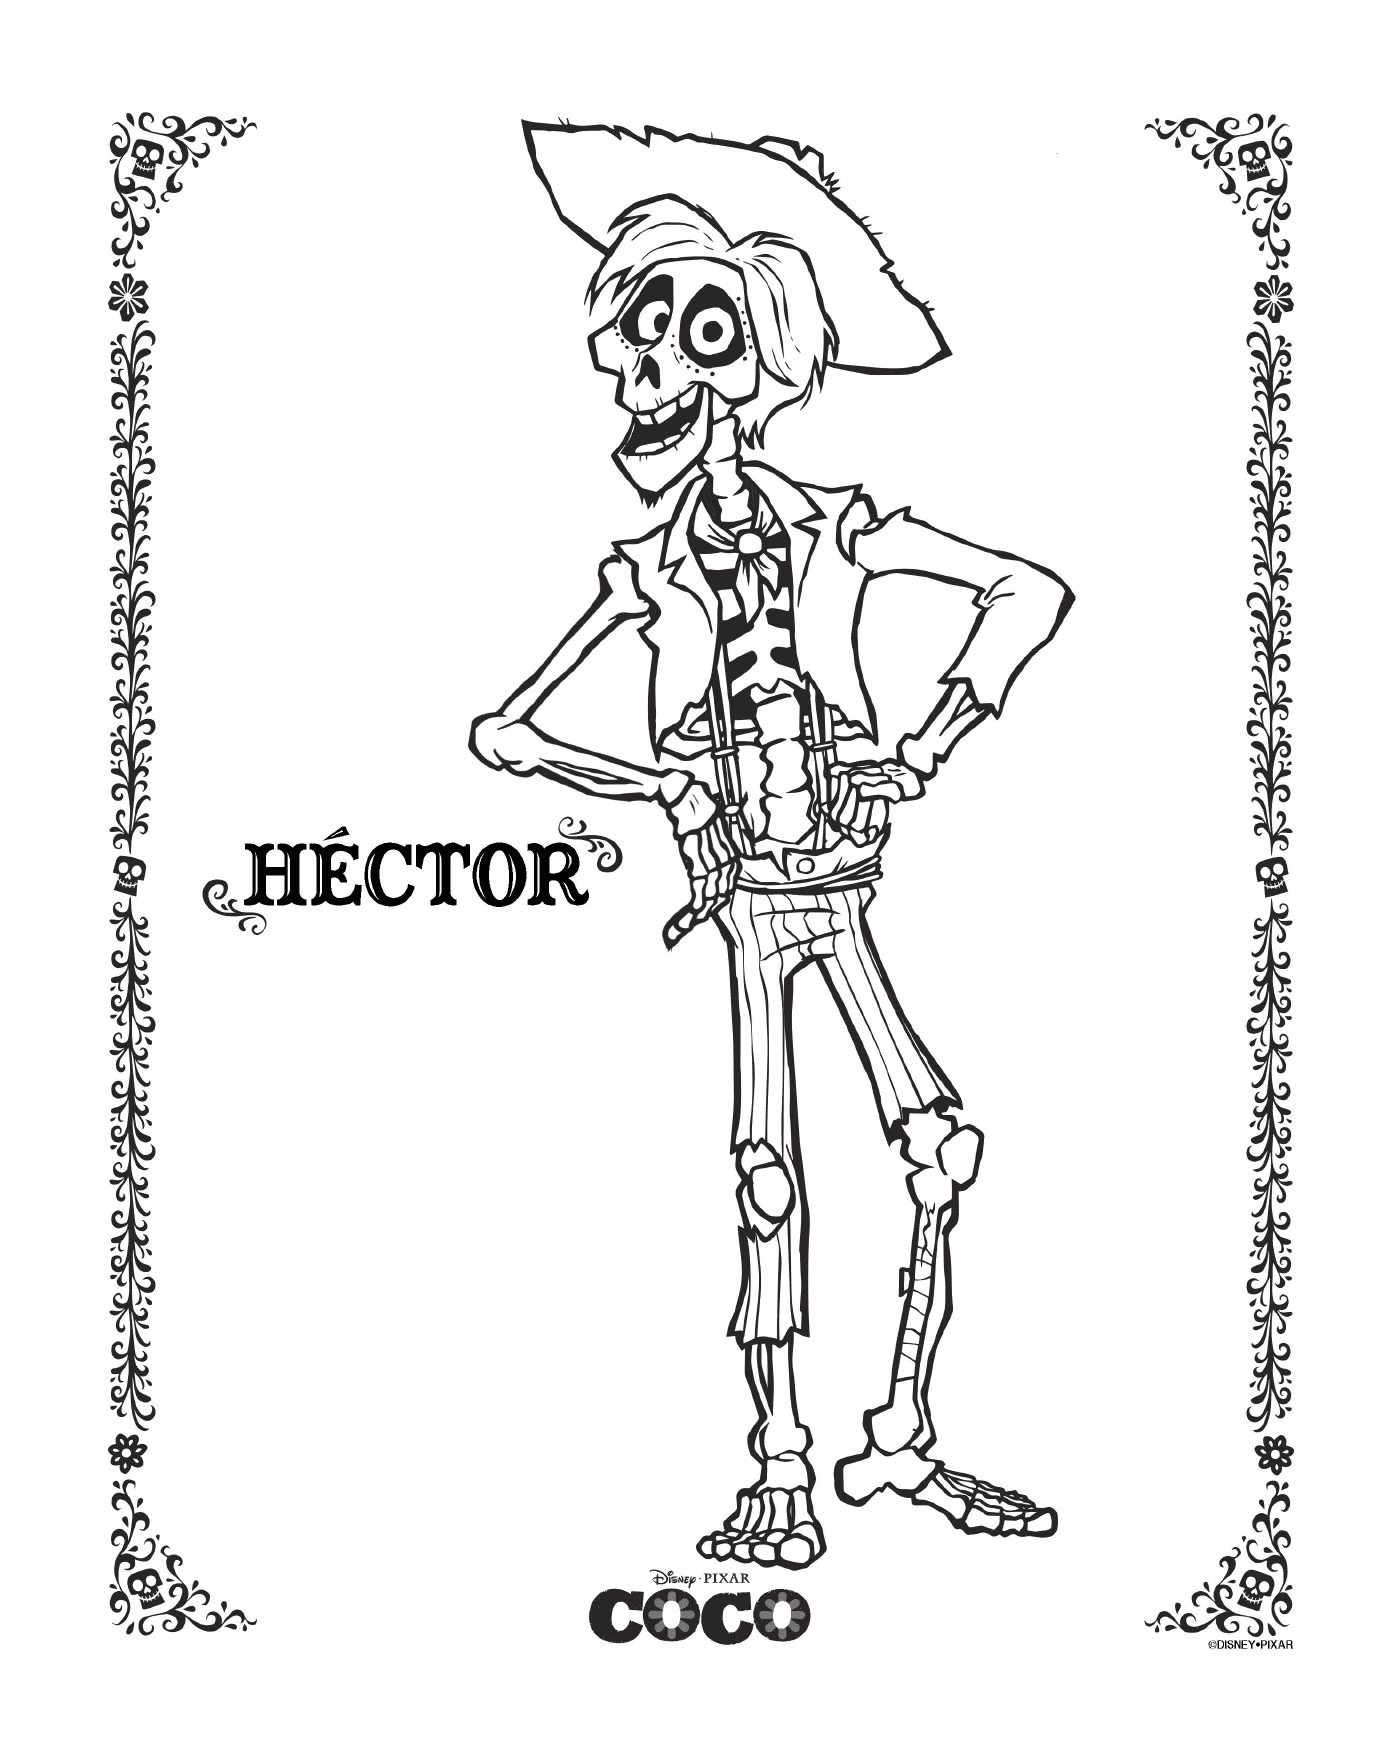   Hector dans Coco, de Disney 